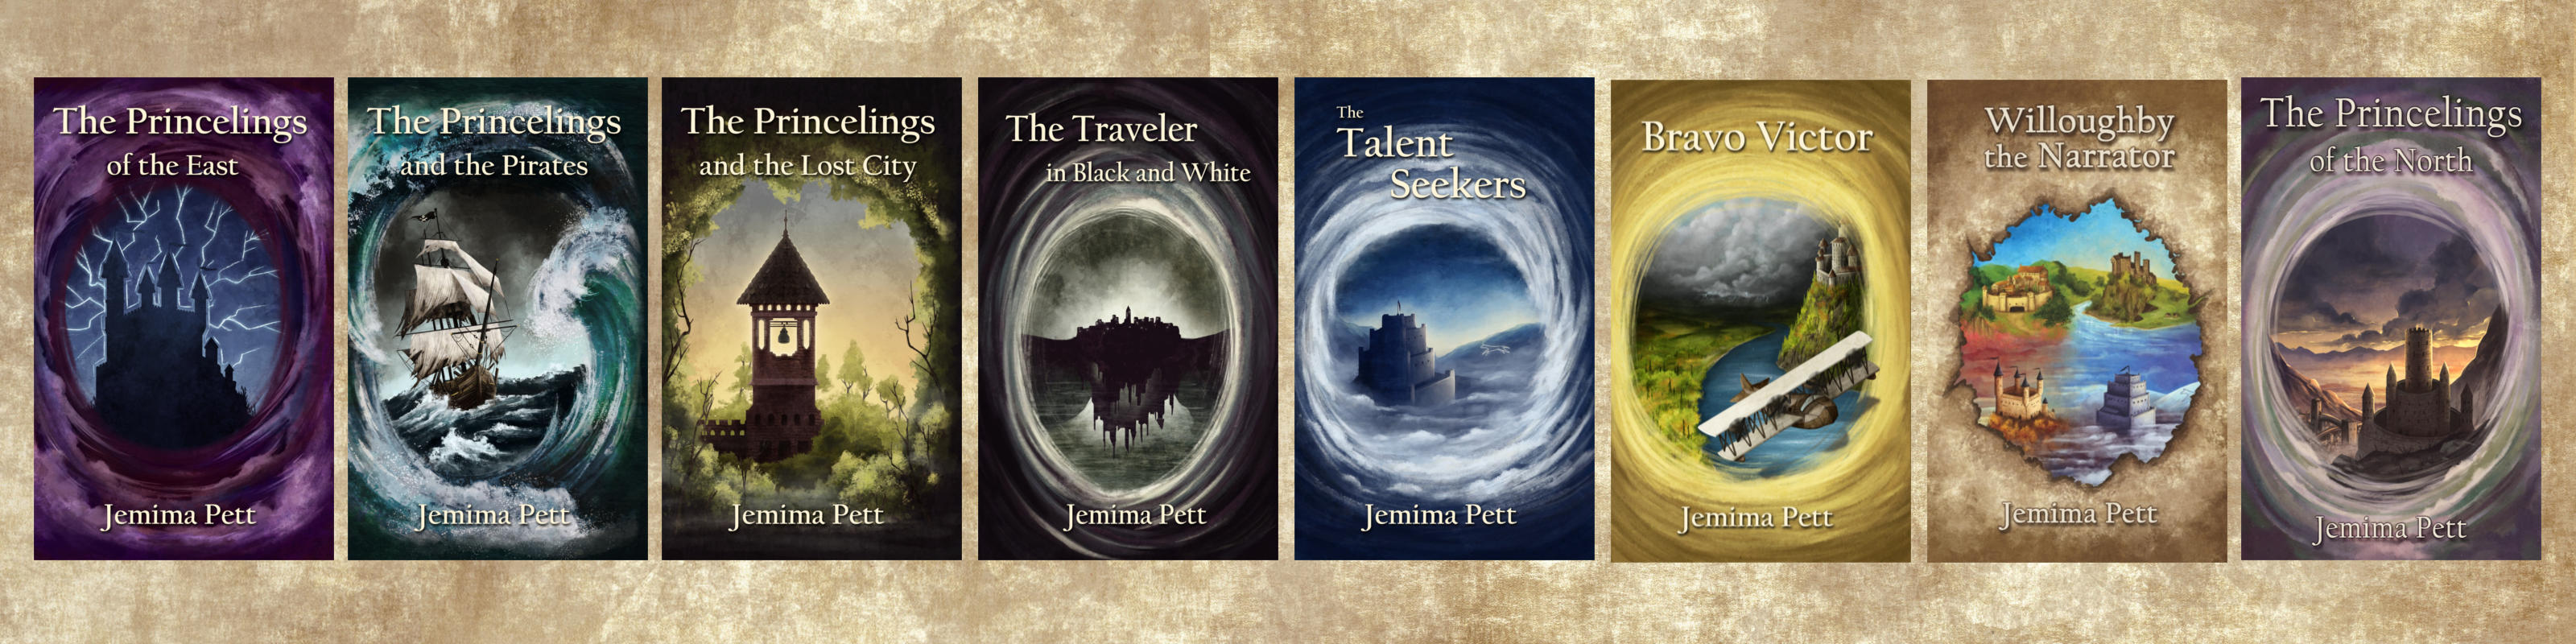 princelings series covers